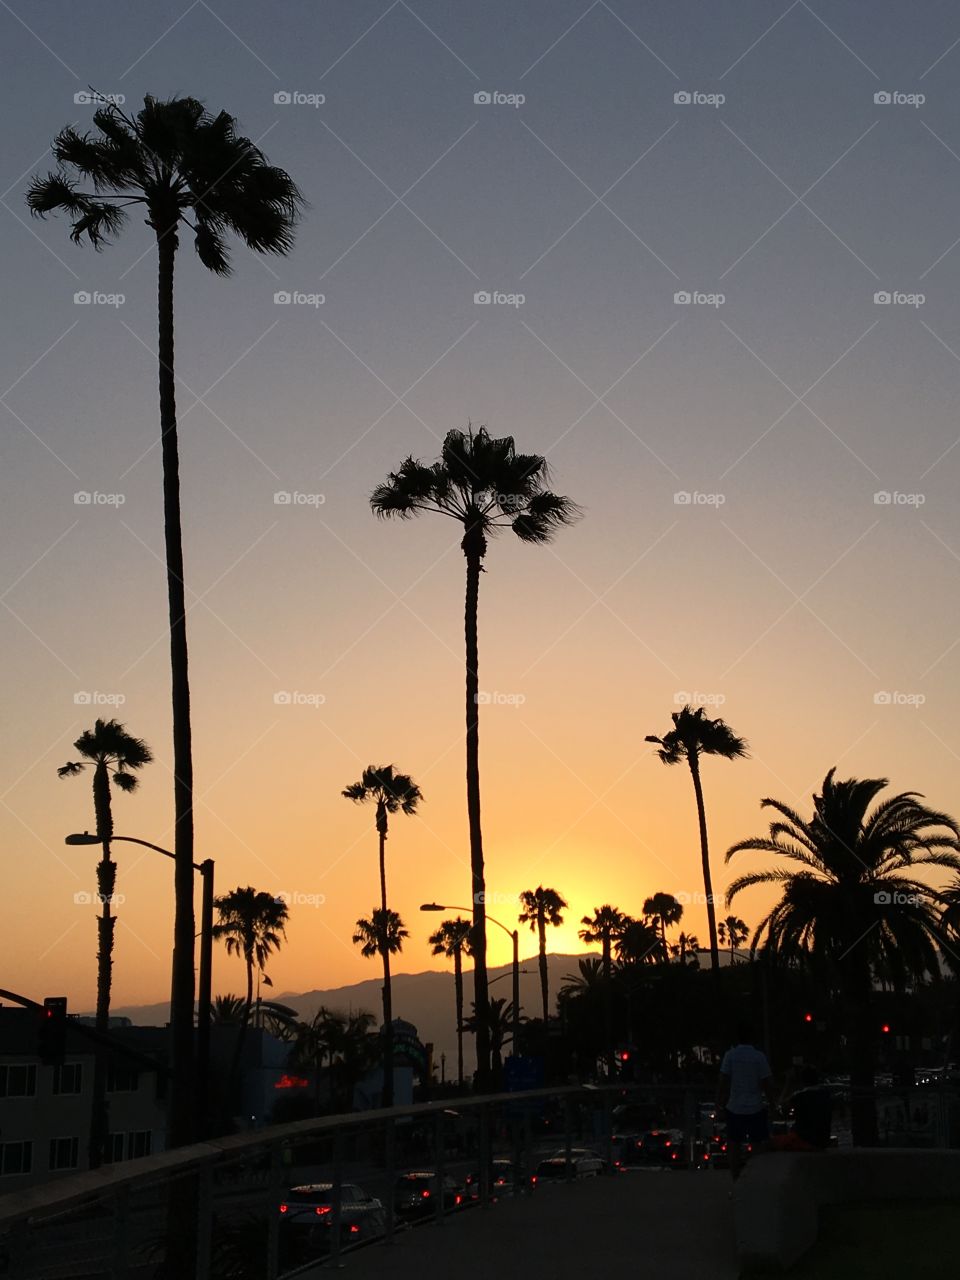 Sunset over Santa Monica 